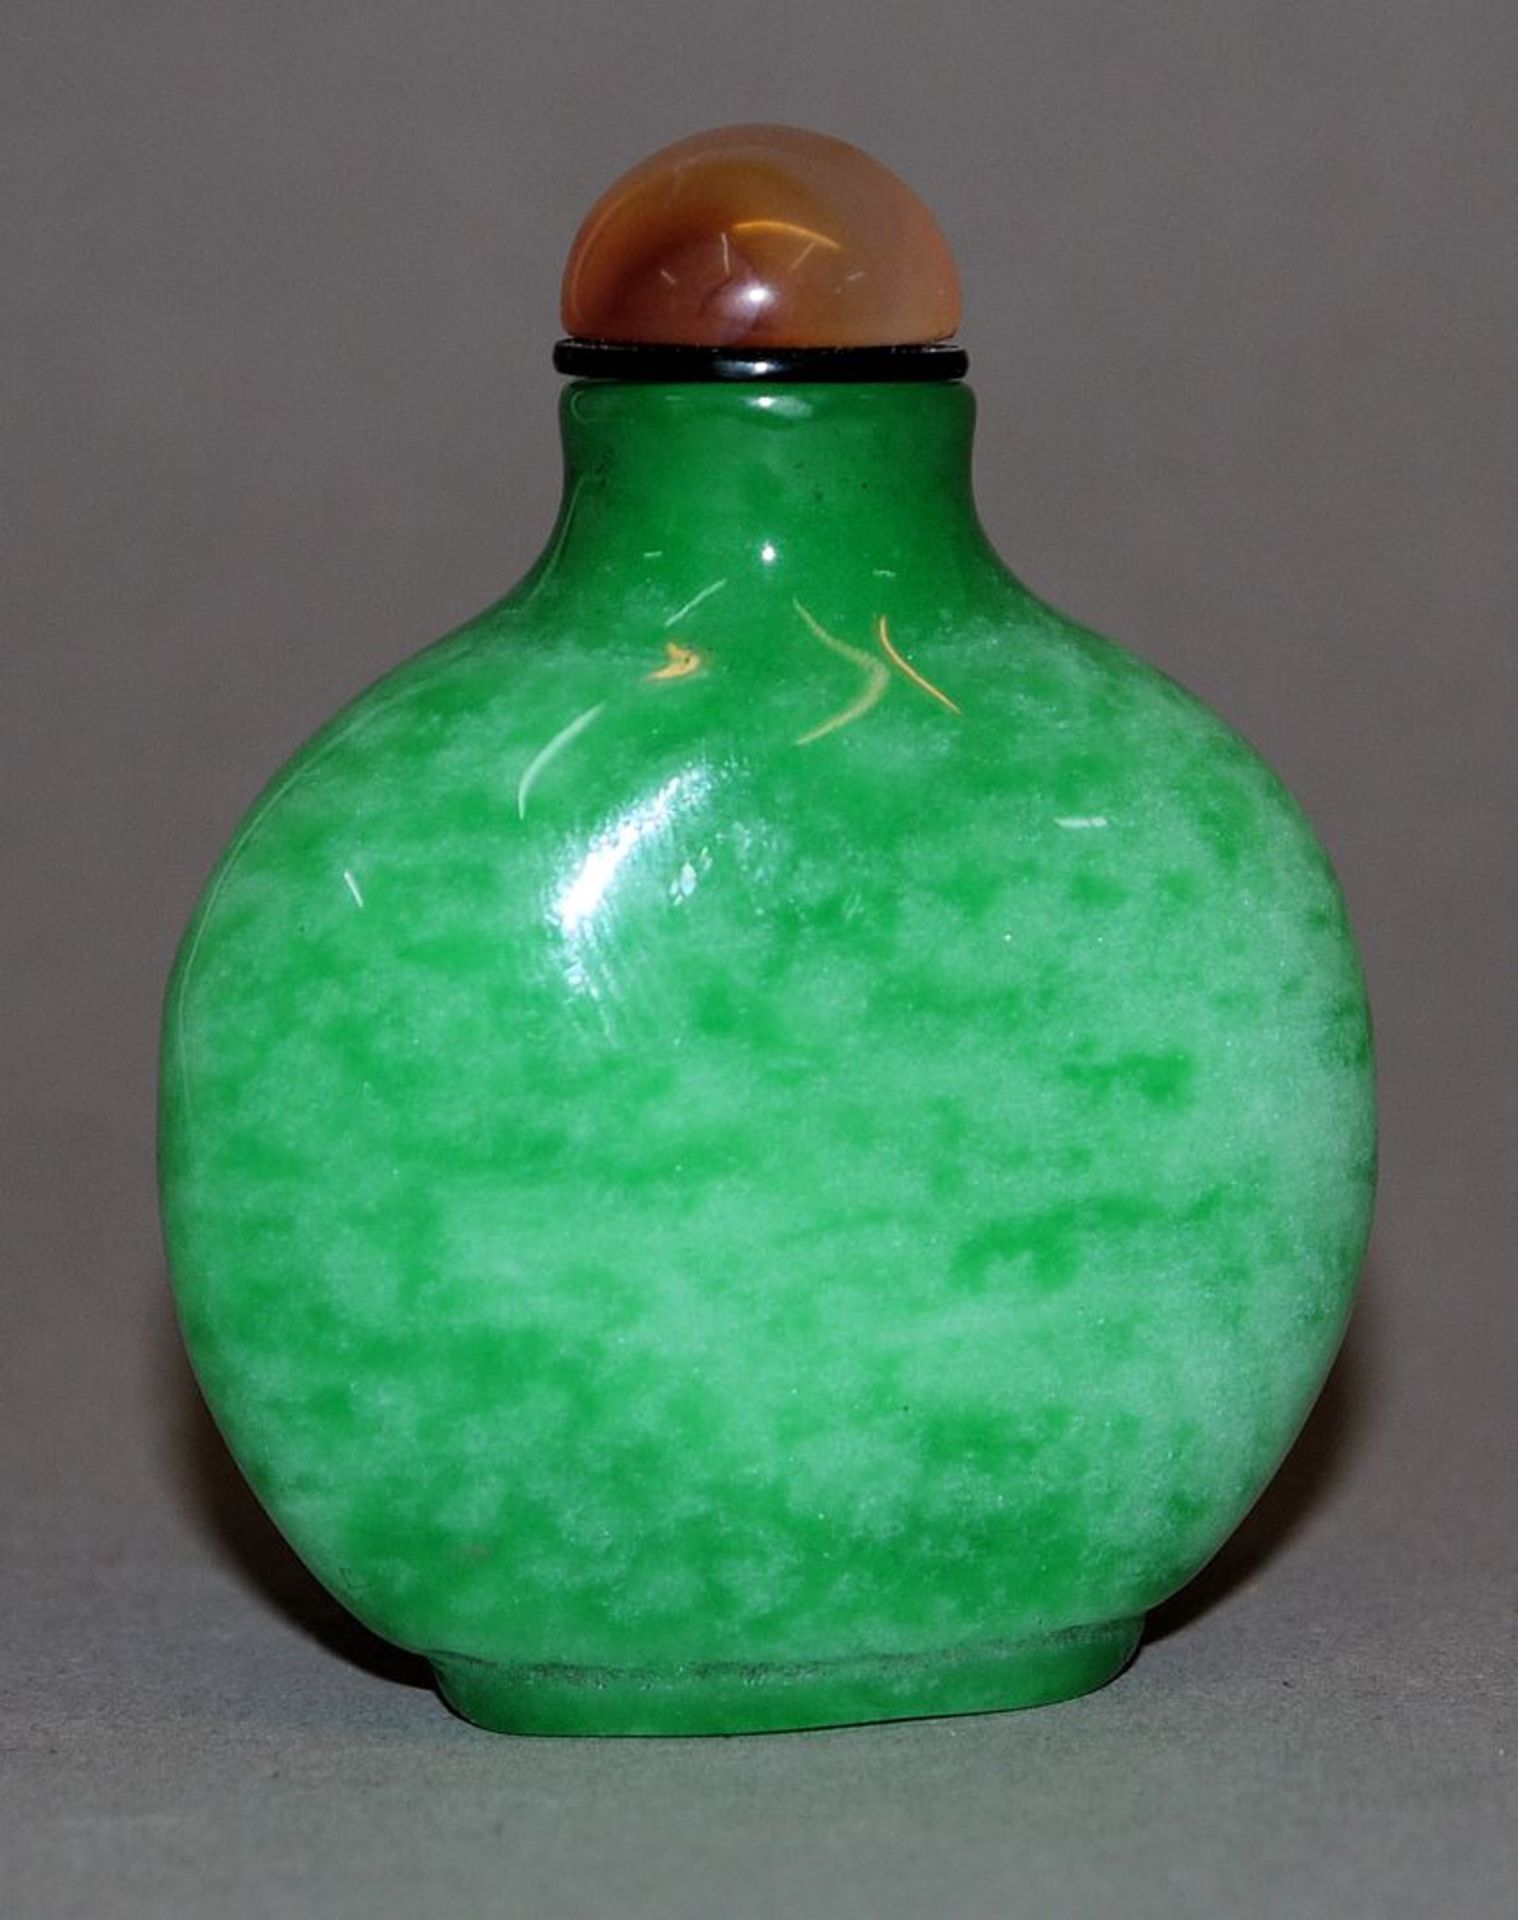 Snuffbottle aus Jade-Glas, China 19./20. Jh. - Bild 2 aus 2